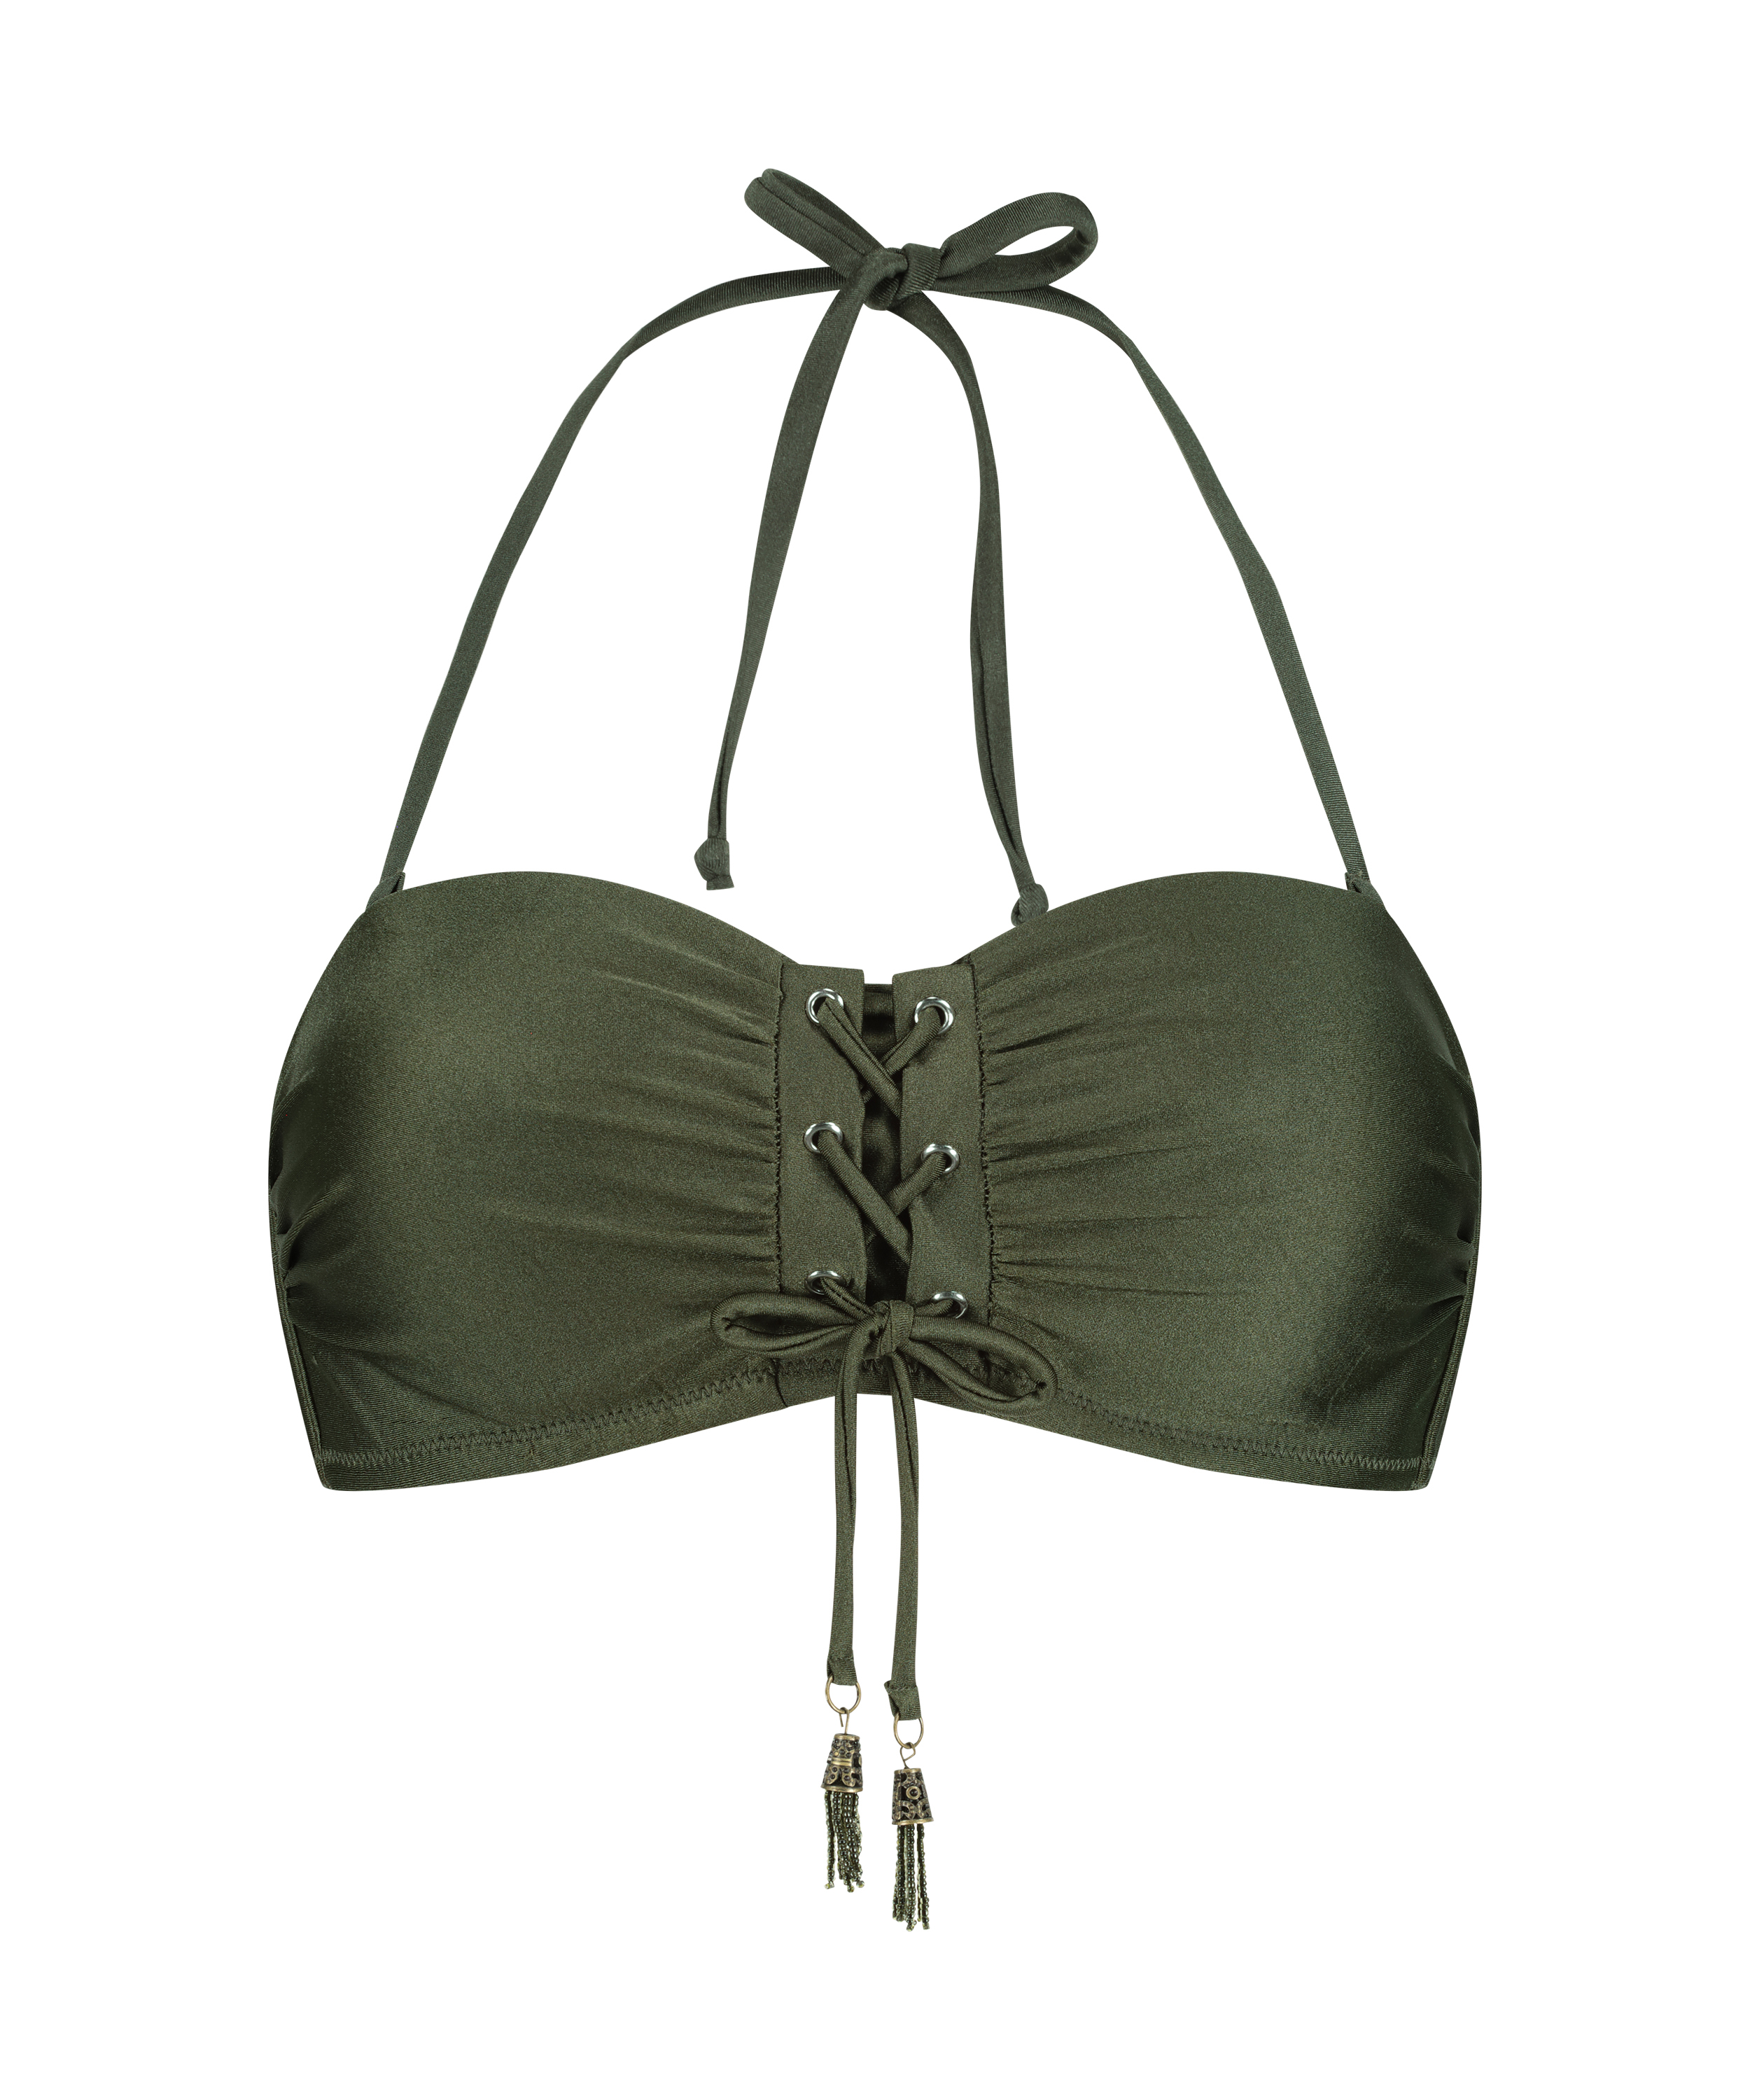 Bandeau-Bikini-Top Lucia, grün, main